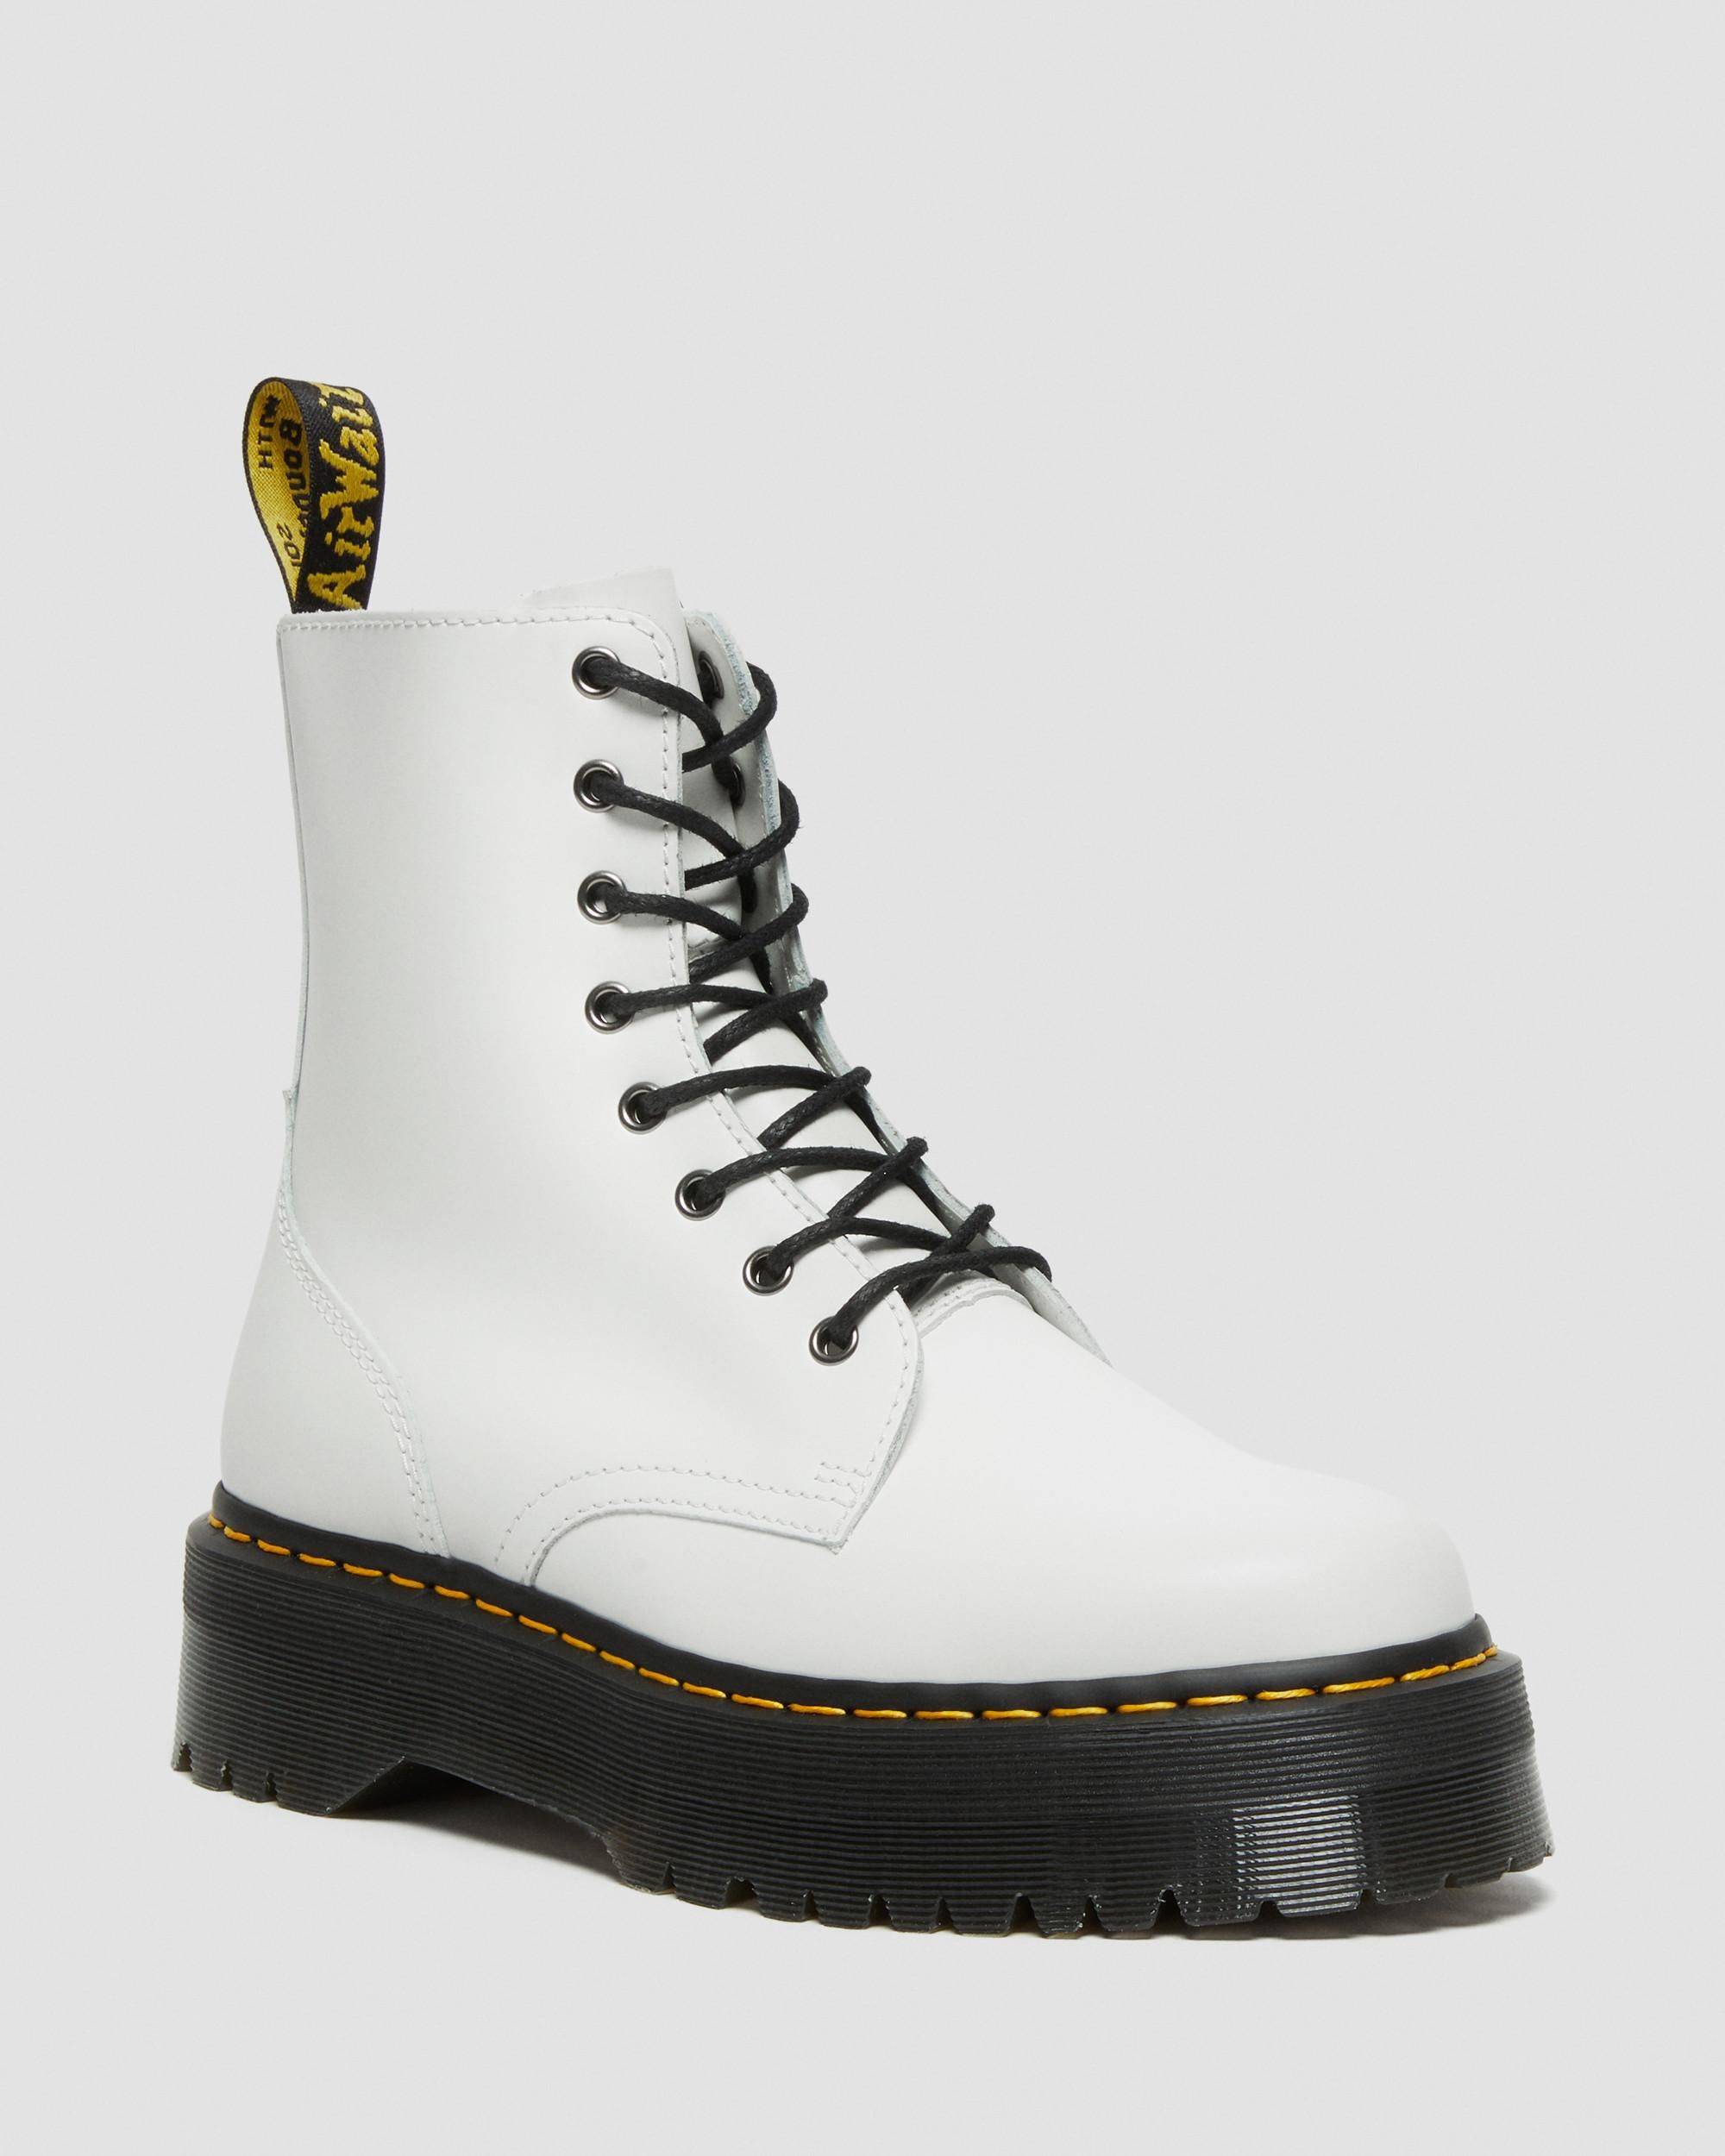 Jadon Boot Smooth Leather Platforms | Dr. Martens